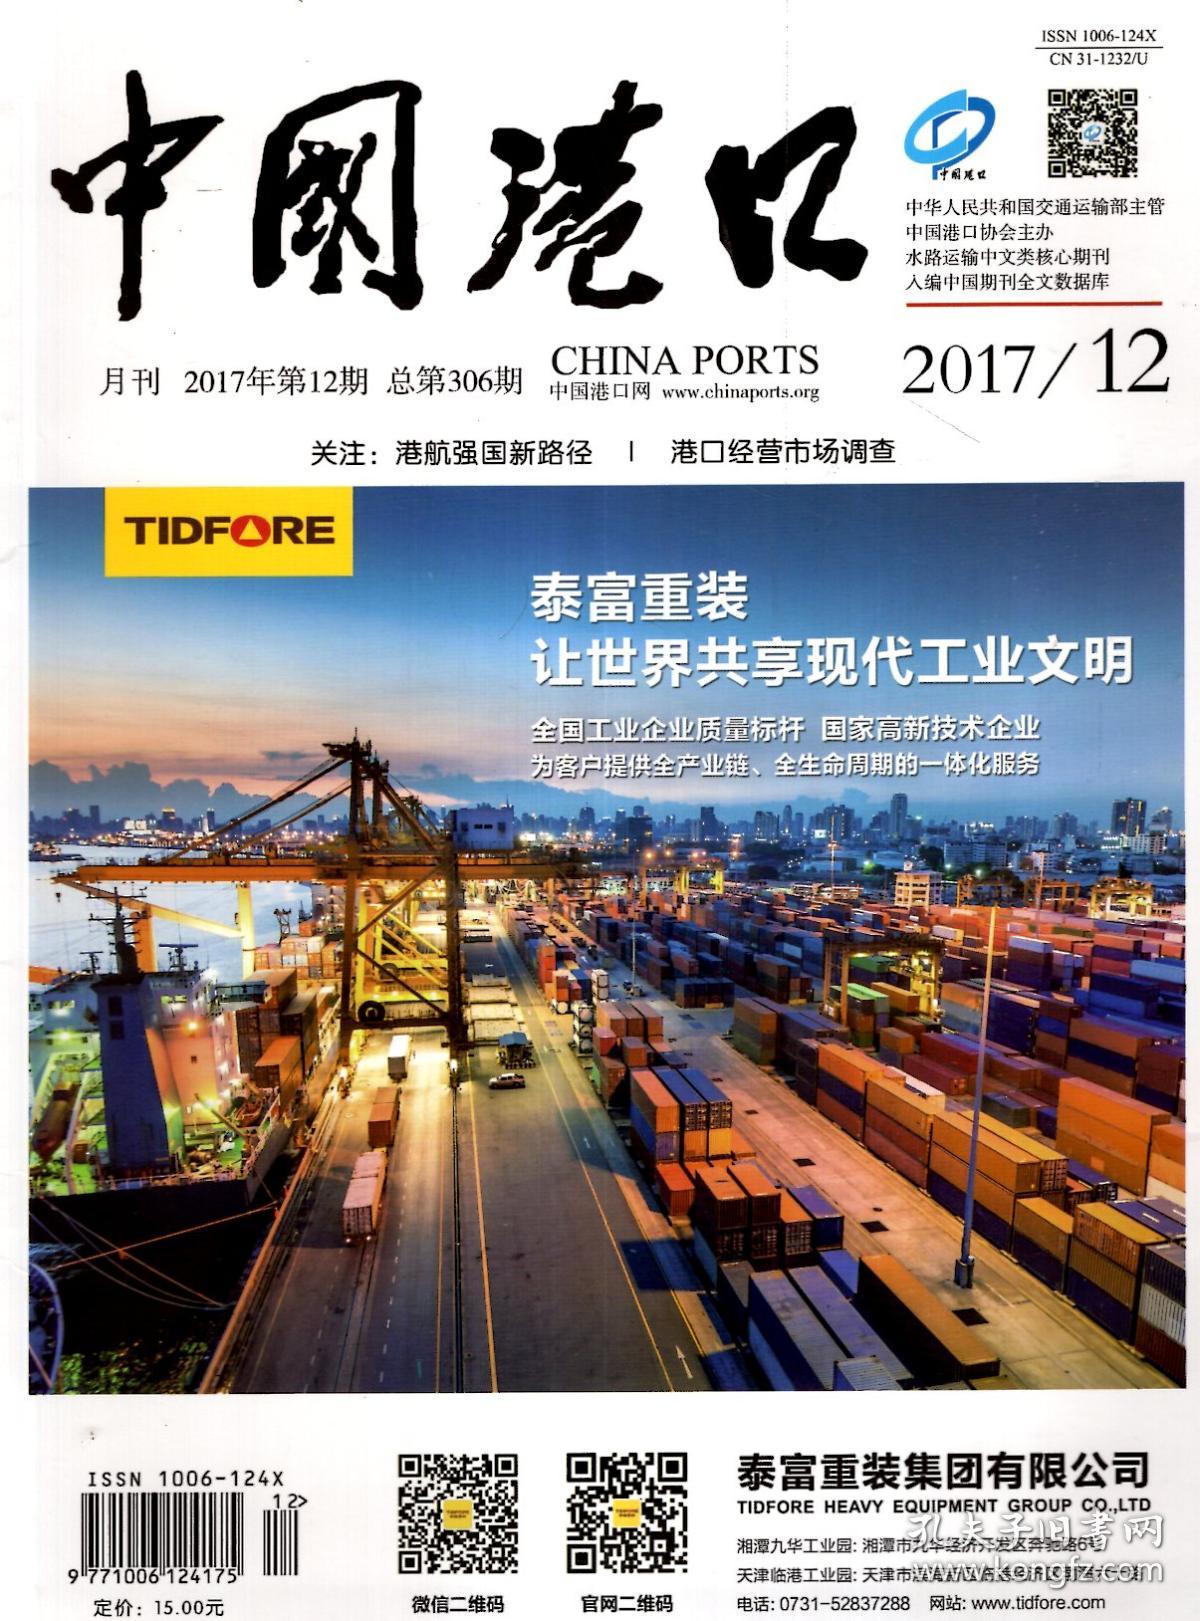 中国港口2017年第6、10、12期.总第300、304、306期.3册合售